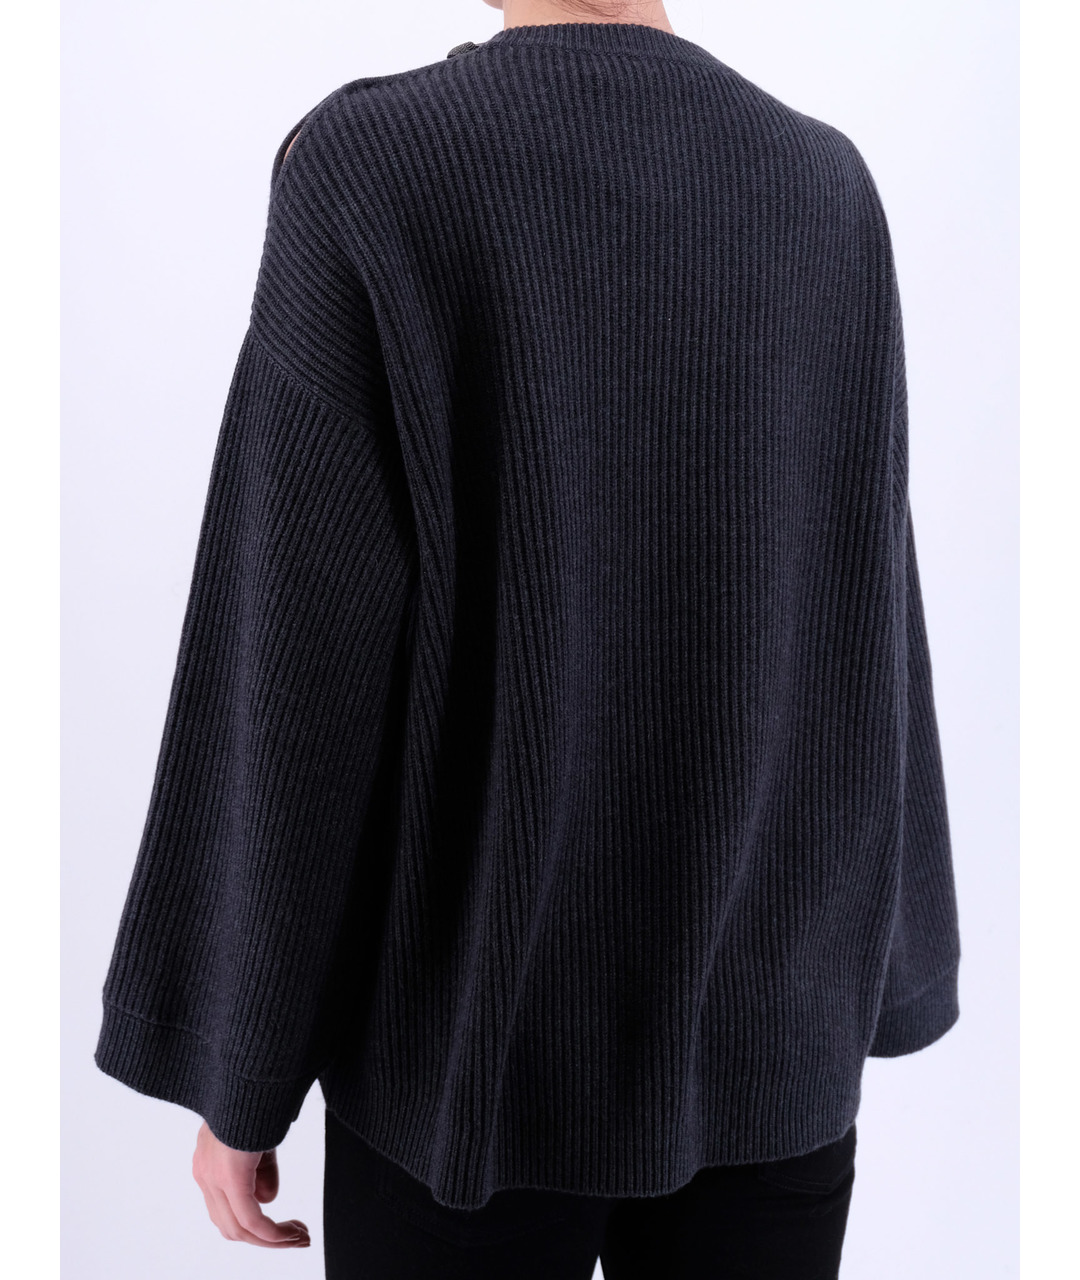 BRUNELLO CUCINELLI Серый кашемировый джемпер / свитер, фото 3